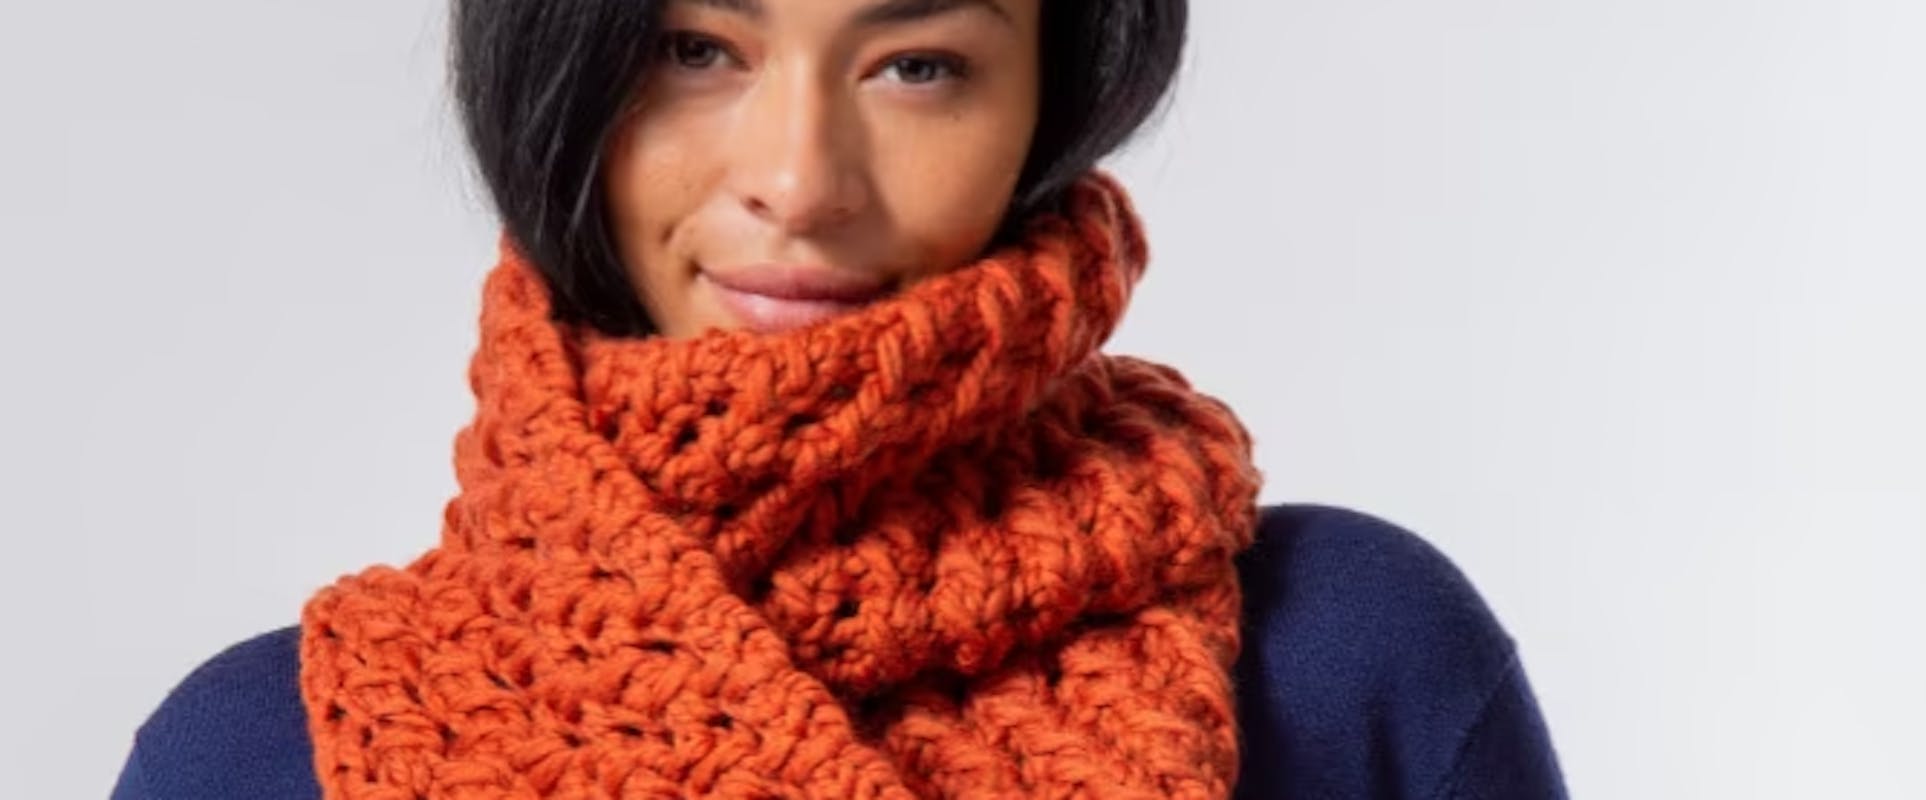 15 Best Crochet Starter Kits for Beginners - Sarah Maker